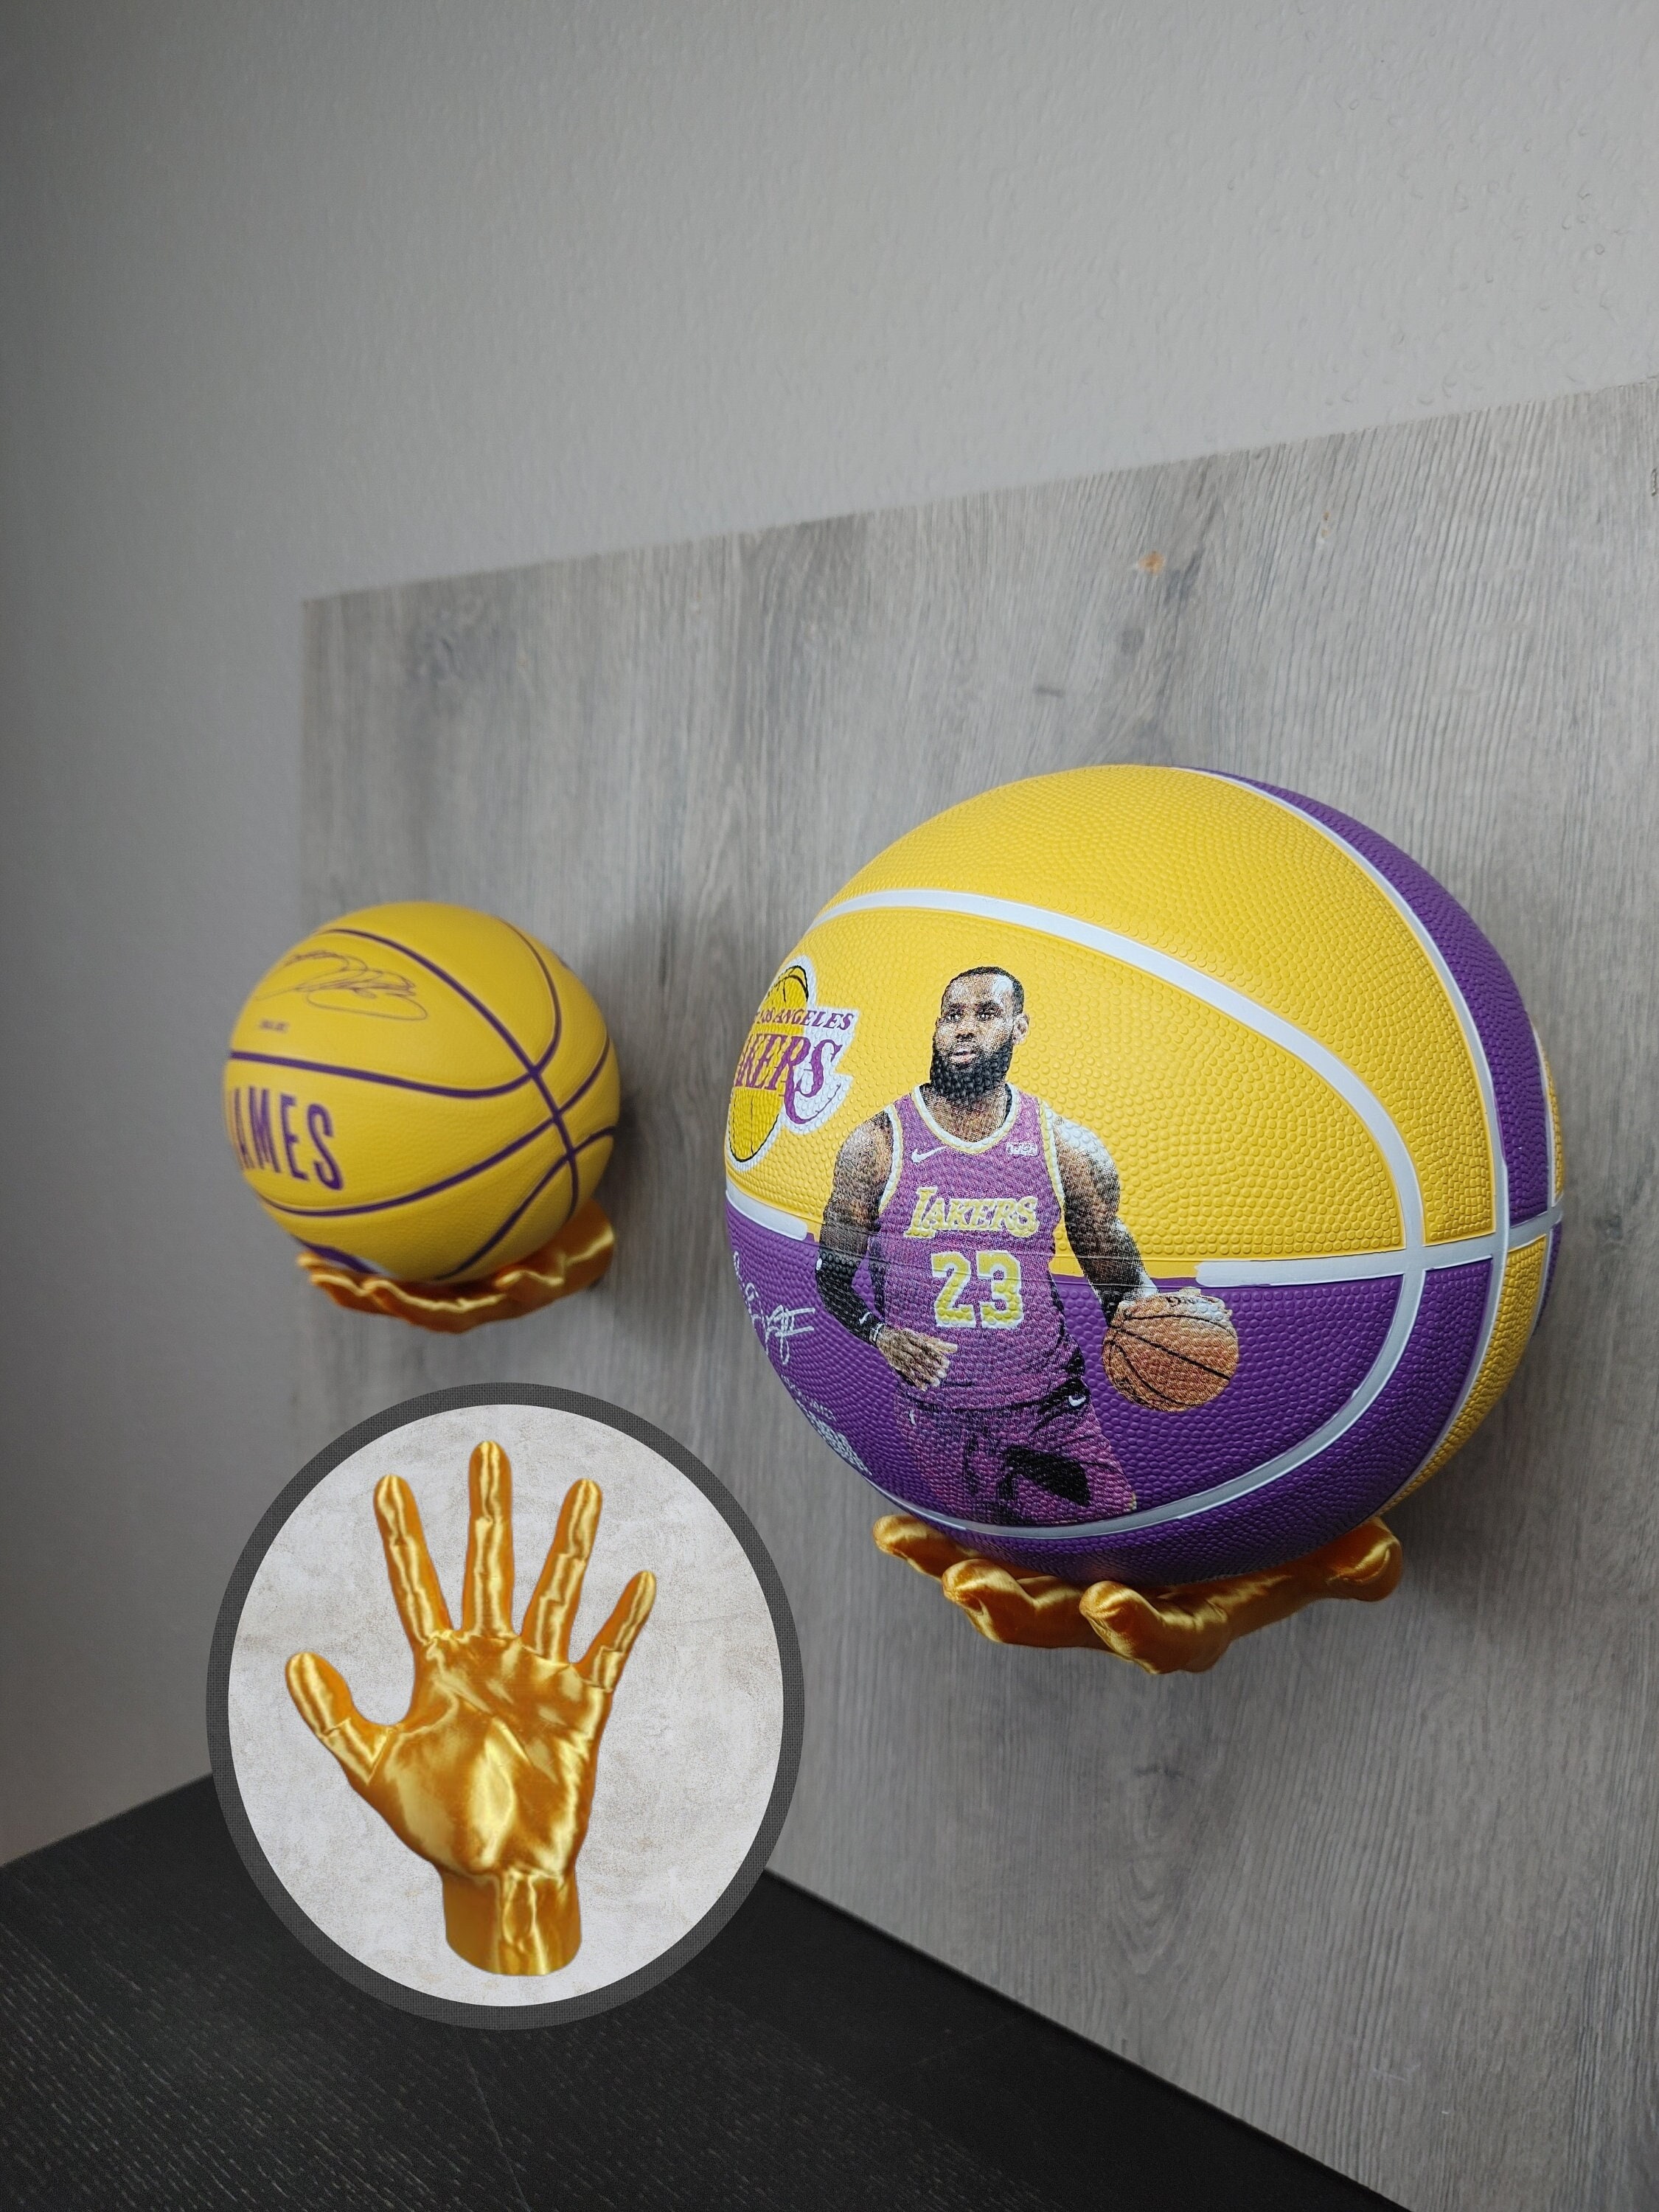 Wandhalterung für Bälle im Hand Design - passend für Basketball Fußball  Bälle